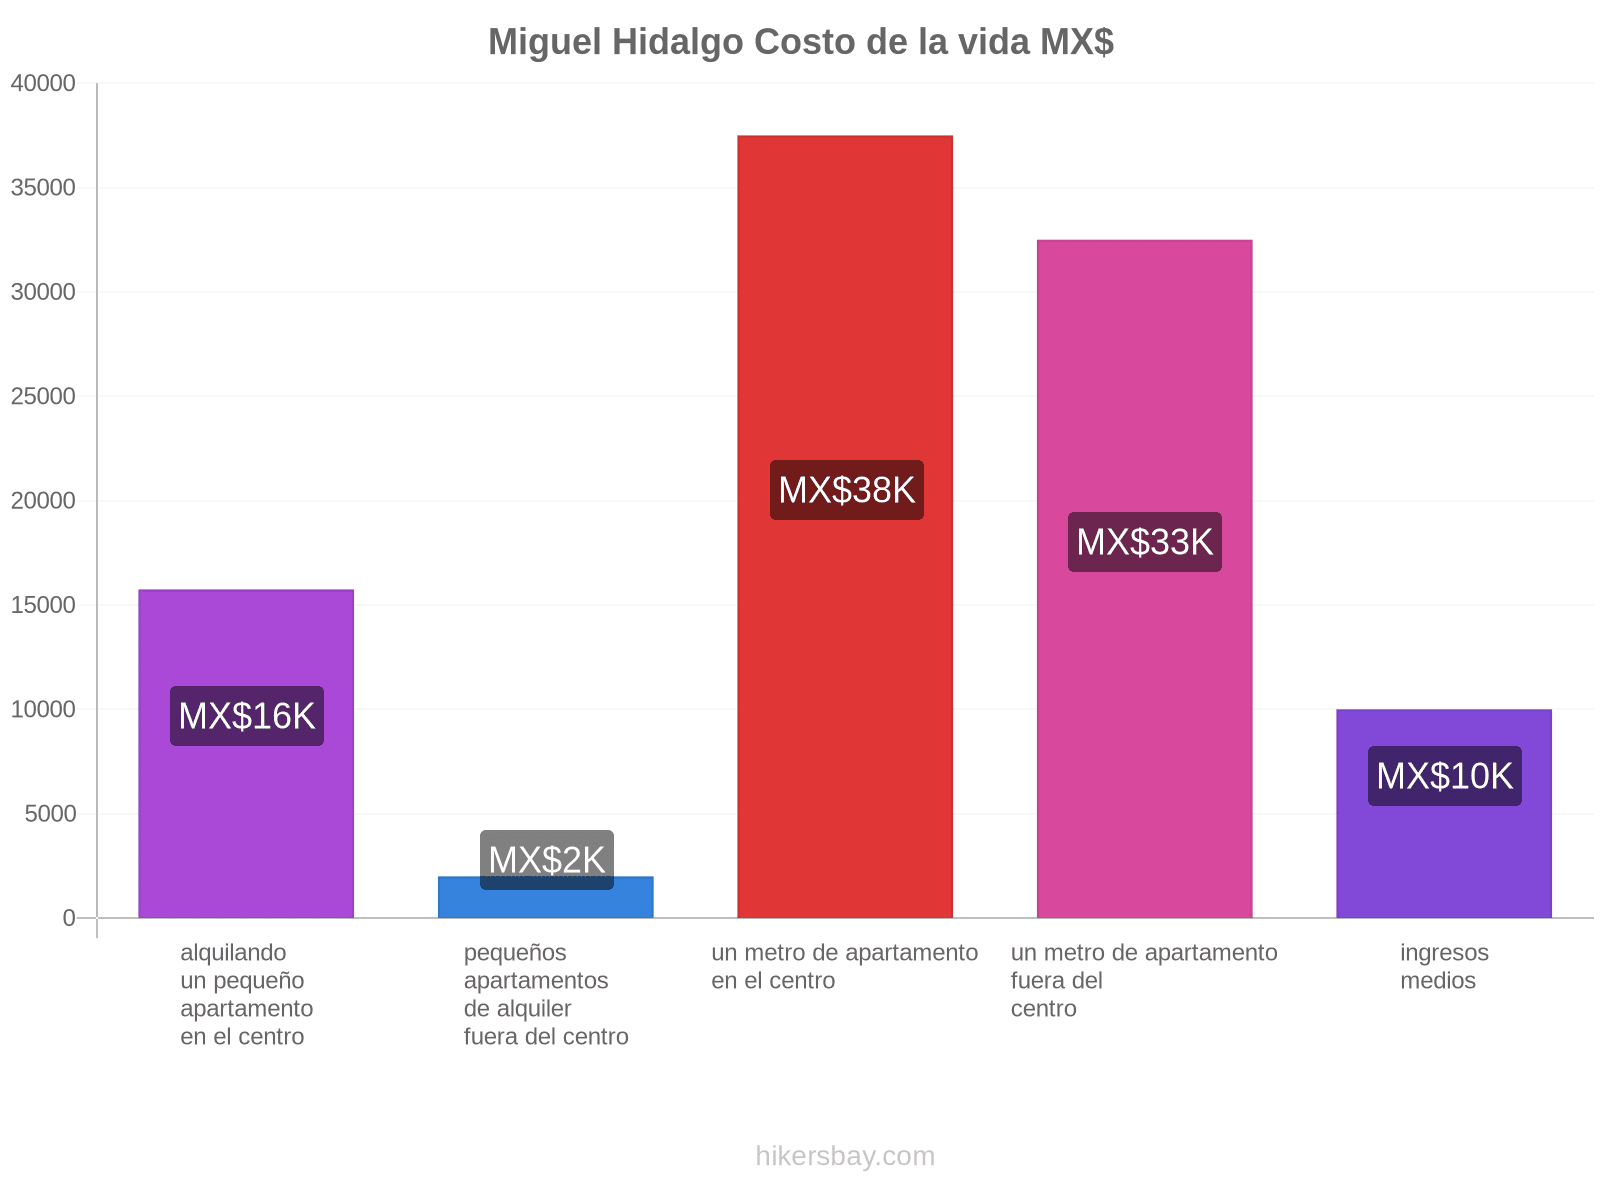 Miguel Hidalgo costo de la vida hikersbay.com